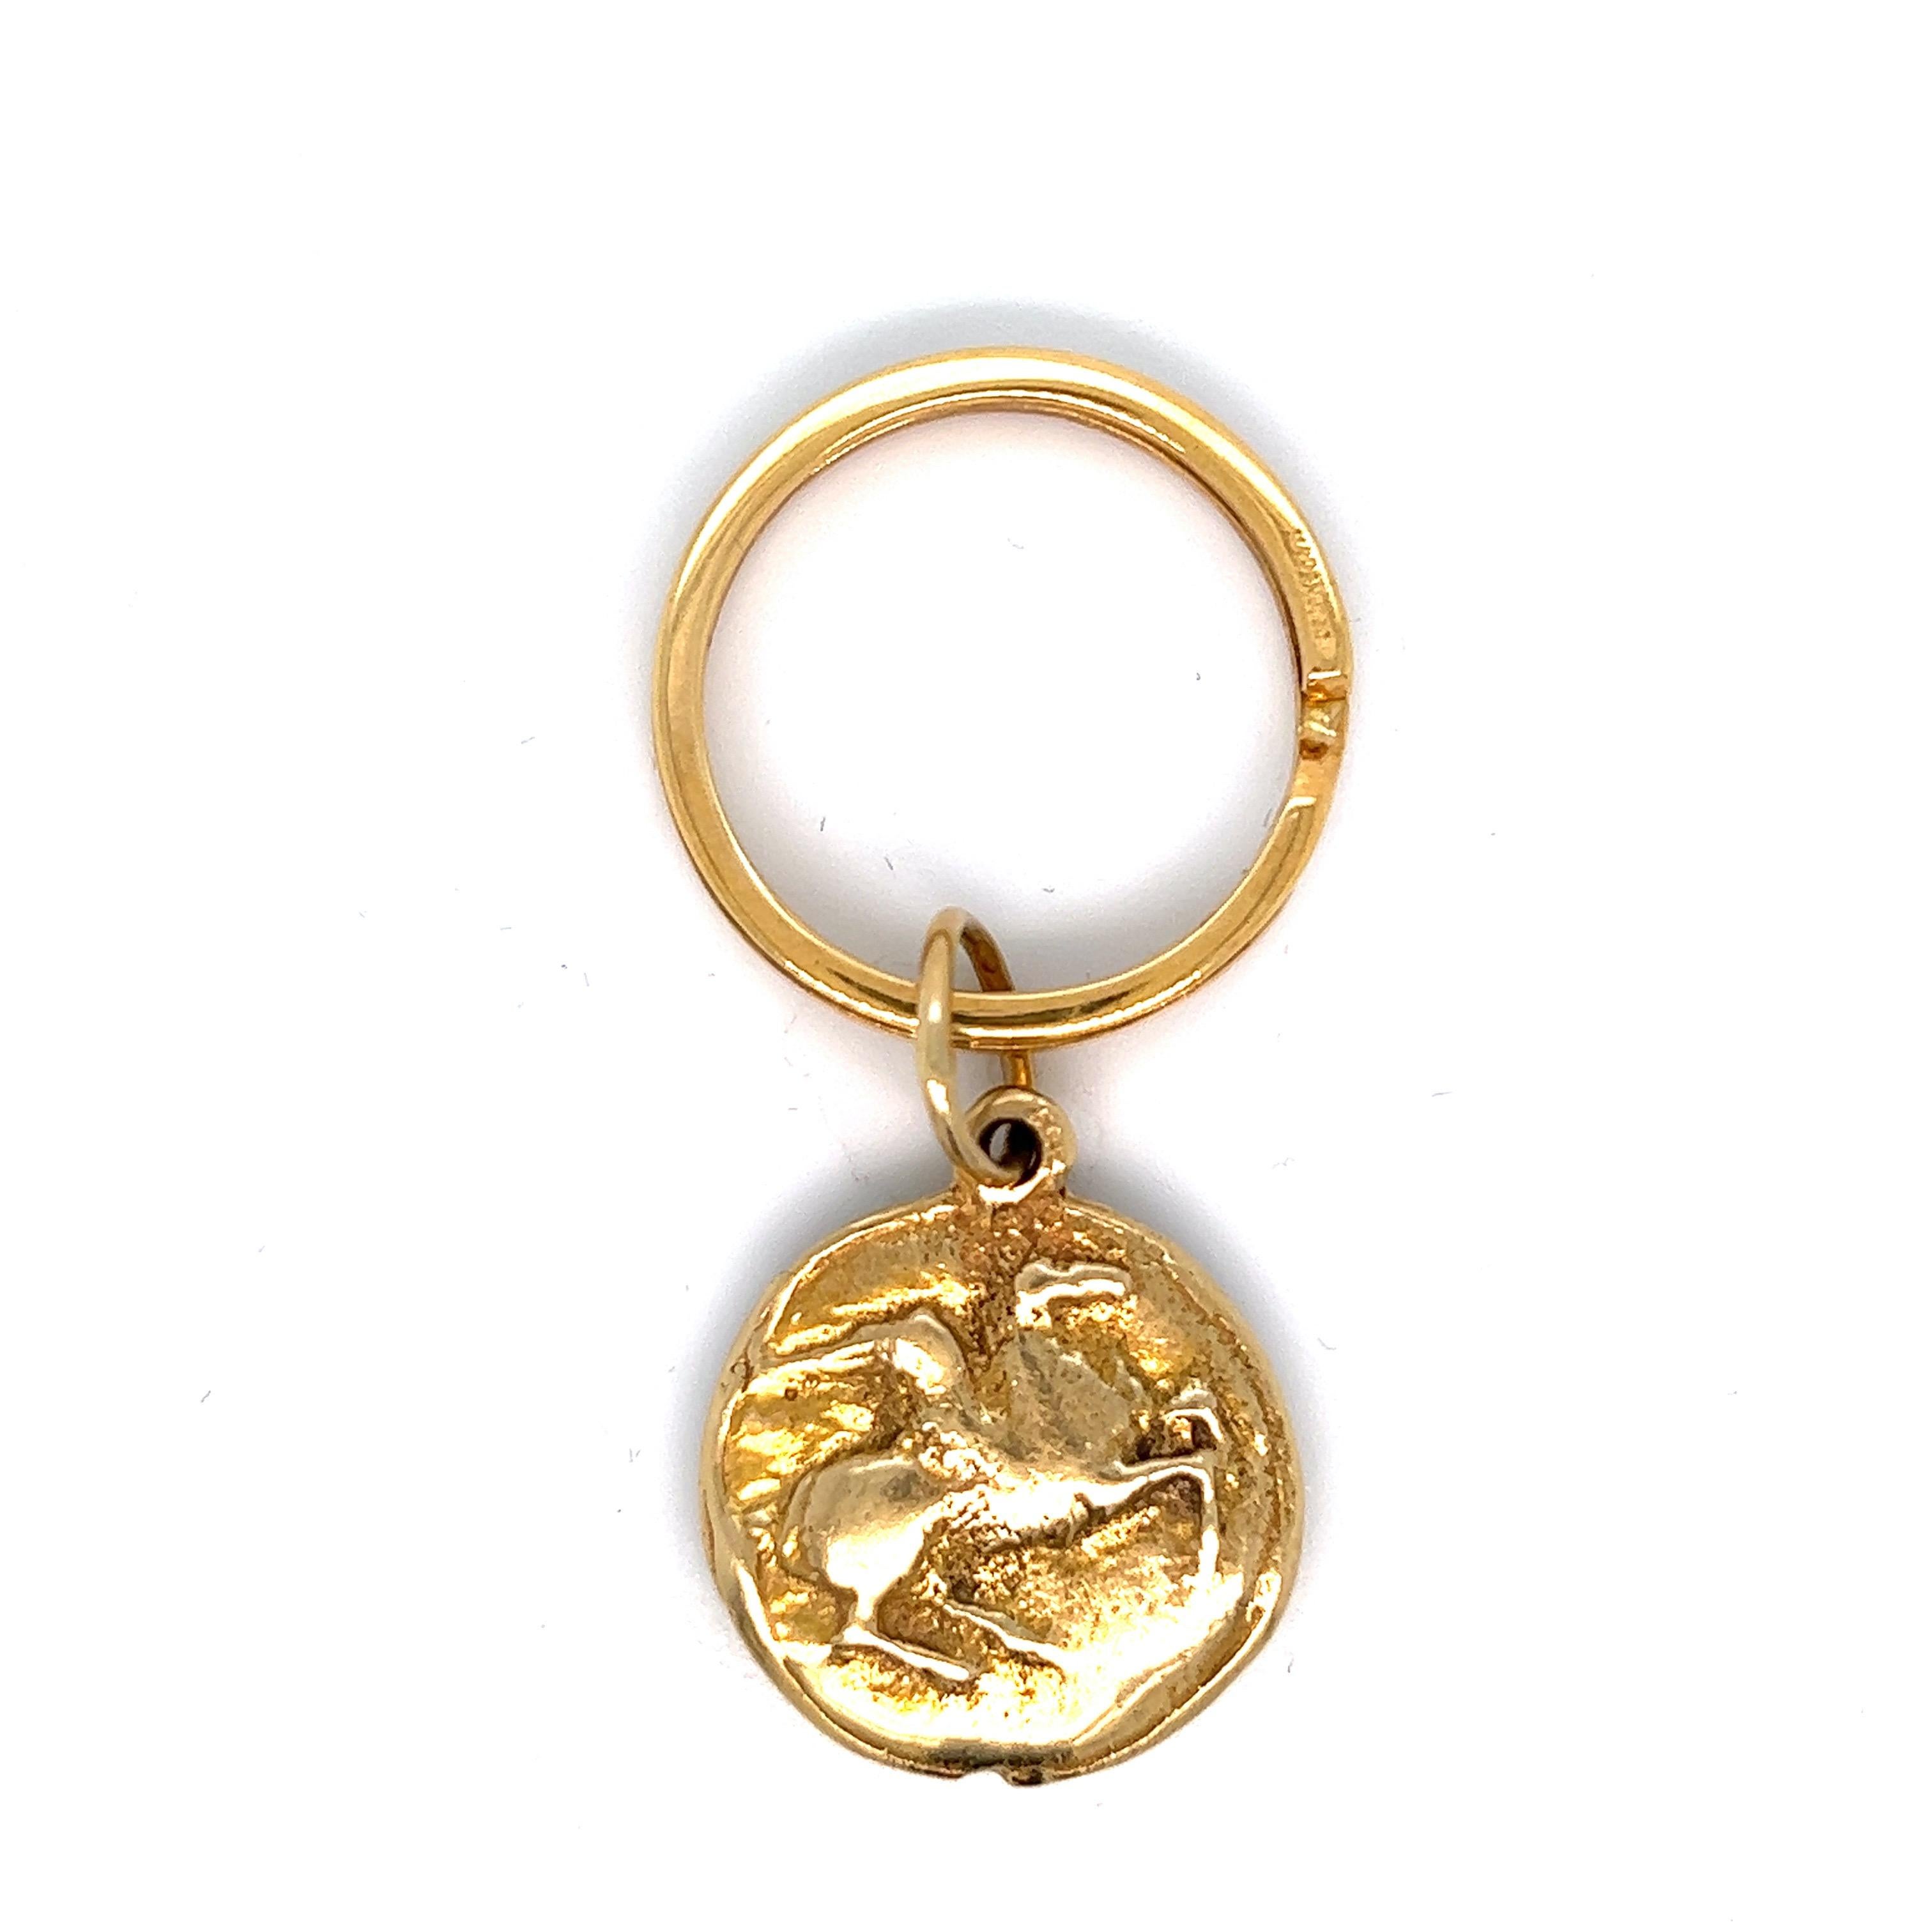 Porte-clés en pièces d'or ; marqué 504 VI, 750

Attribué au style de Bvlgari, or jaune 18 carats

Taille : largeur 2,4 cm, longueur 2,8 cm
Poids total : 27.0 grammes